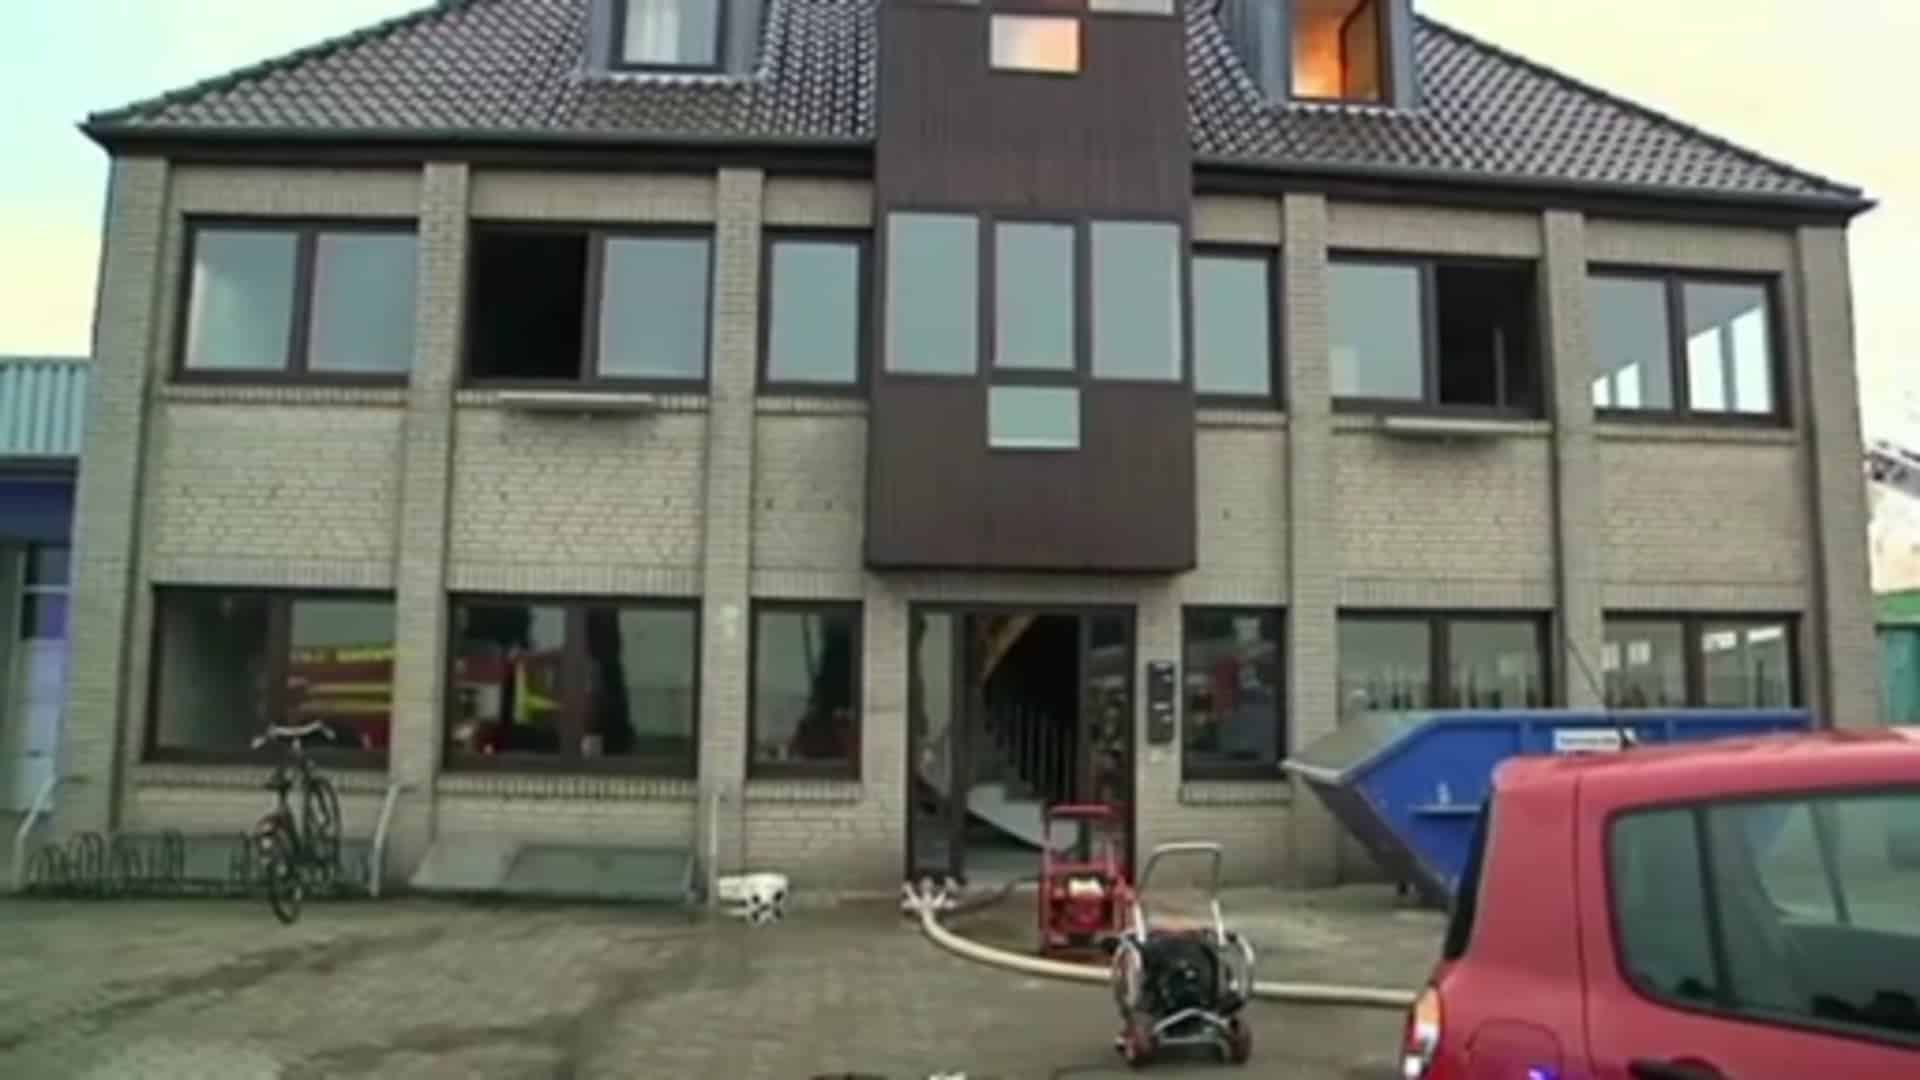 Feuer im Haus: Menschen gerettet